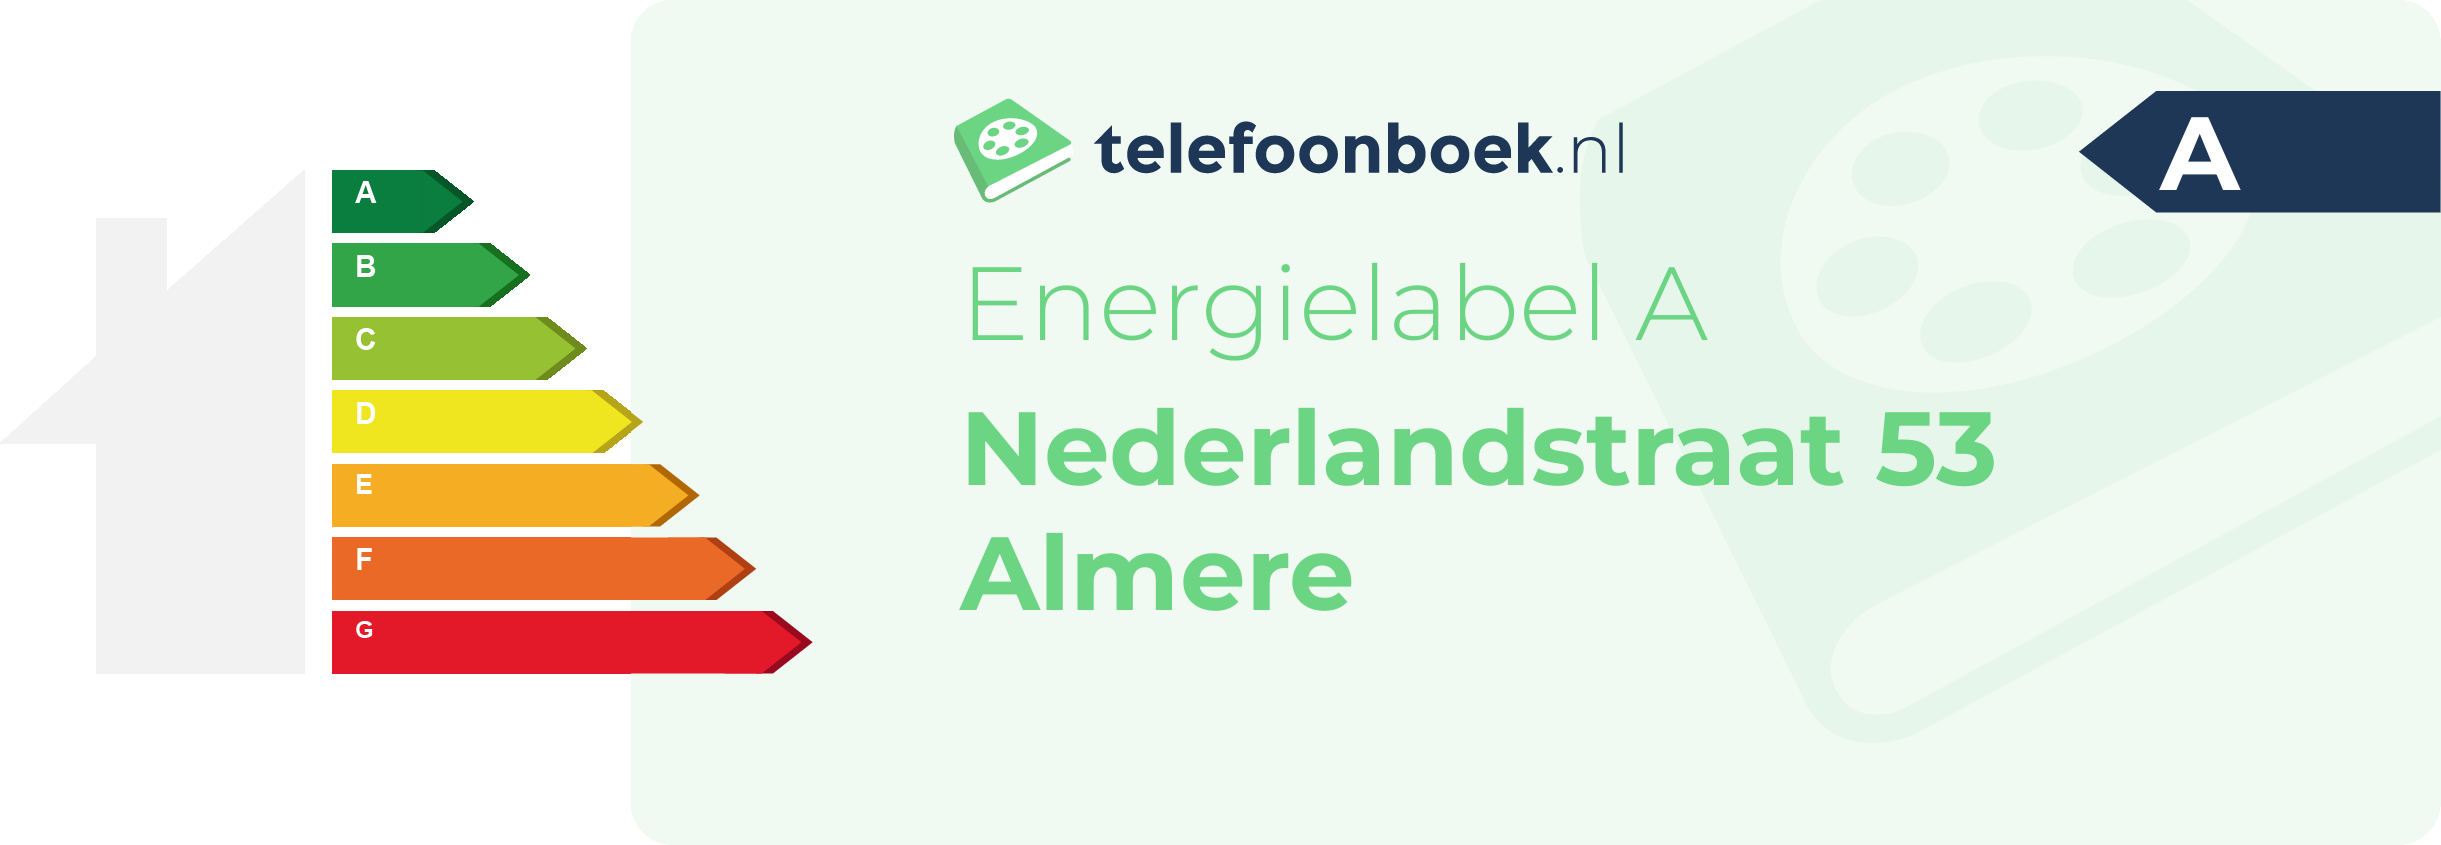 Energielabel Nederlandstraat 53 Almere